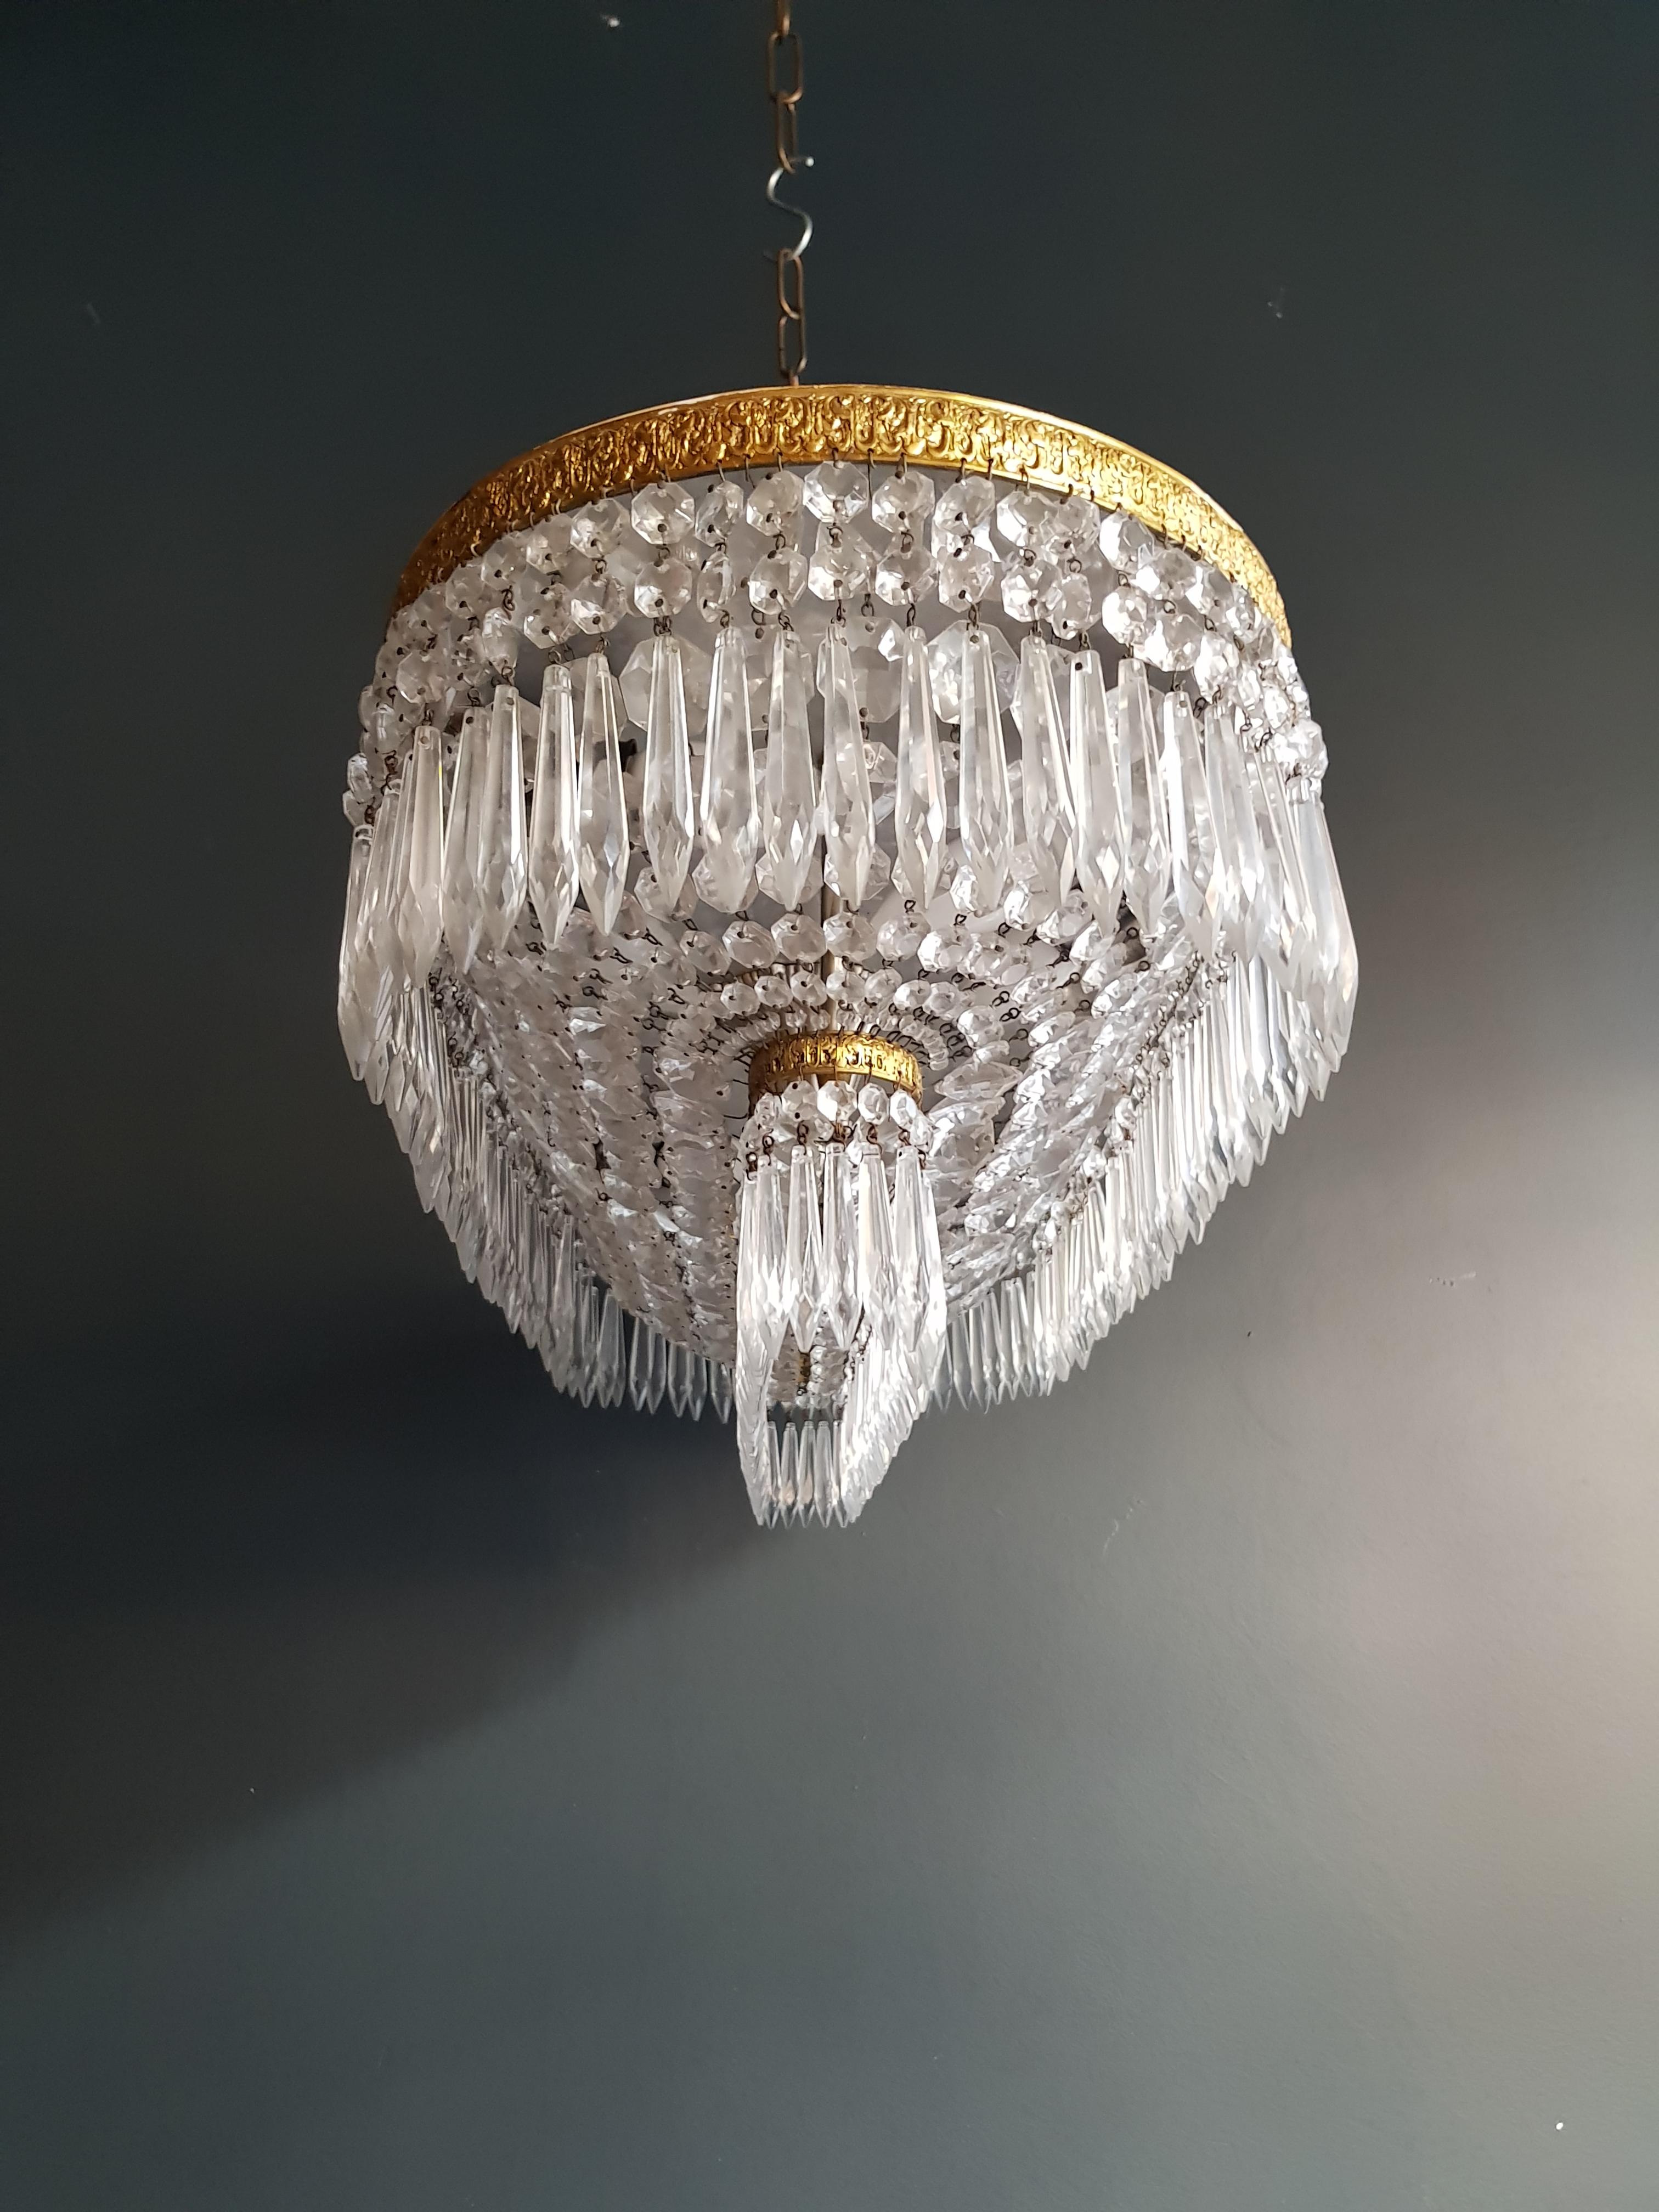 Pair Plafonnier Crystal Chandelier Brass Lustre Ceiling Lamp Antique Art Nouveau 1